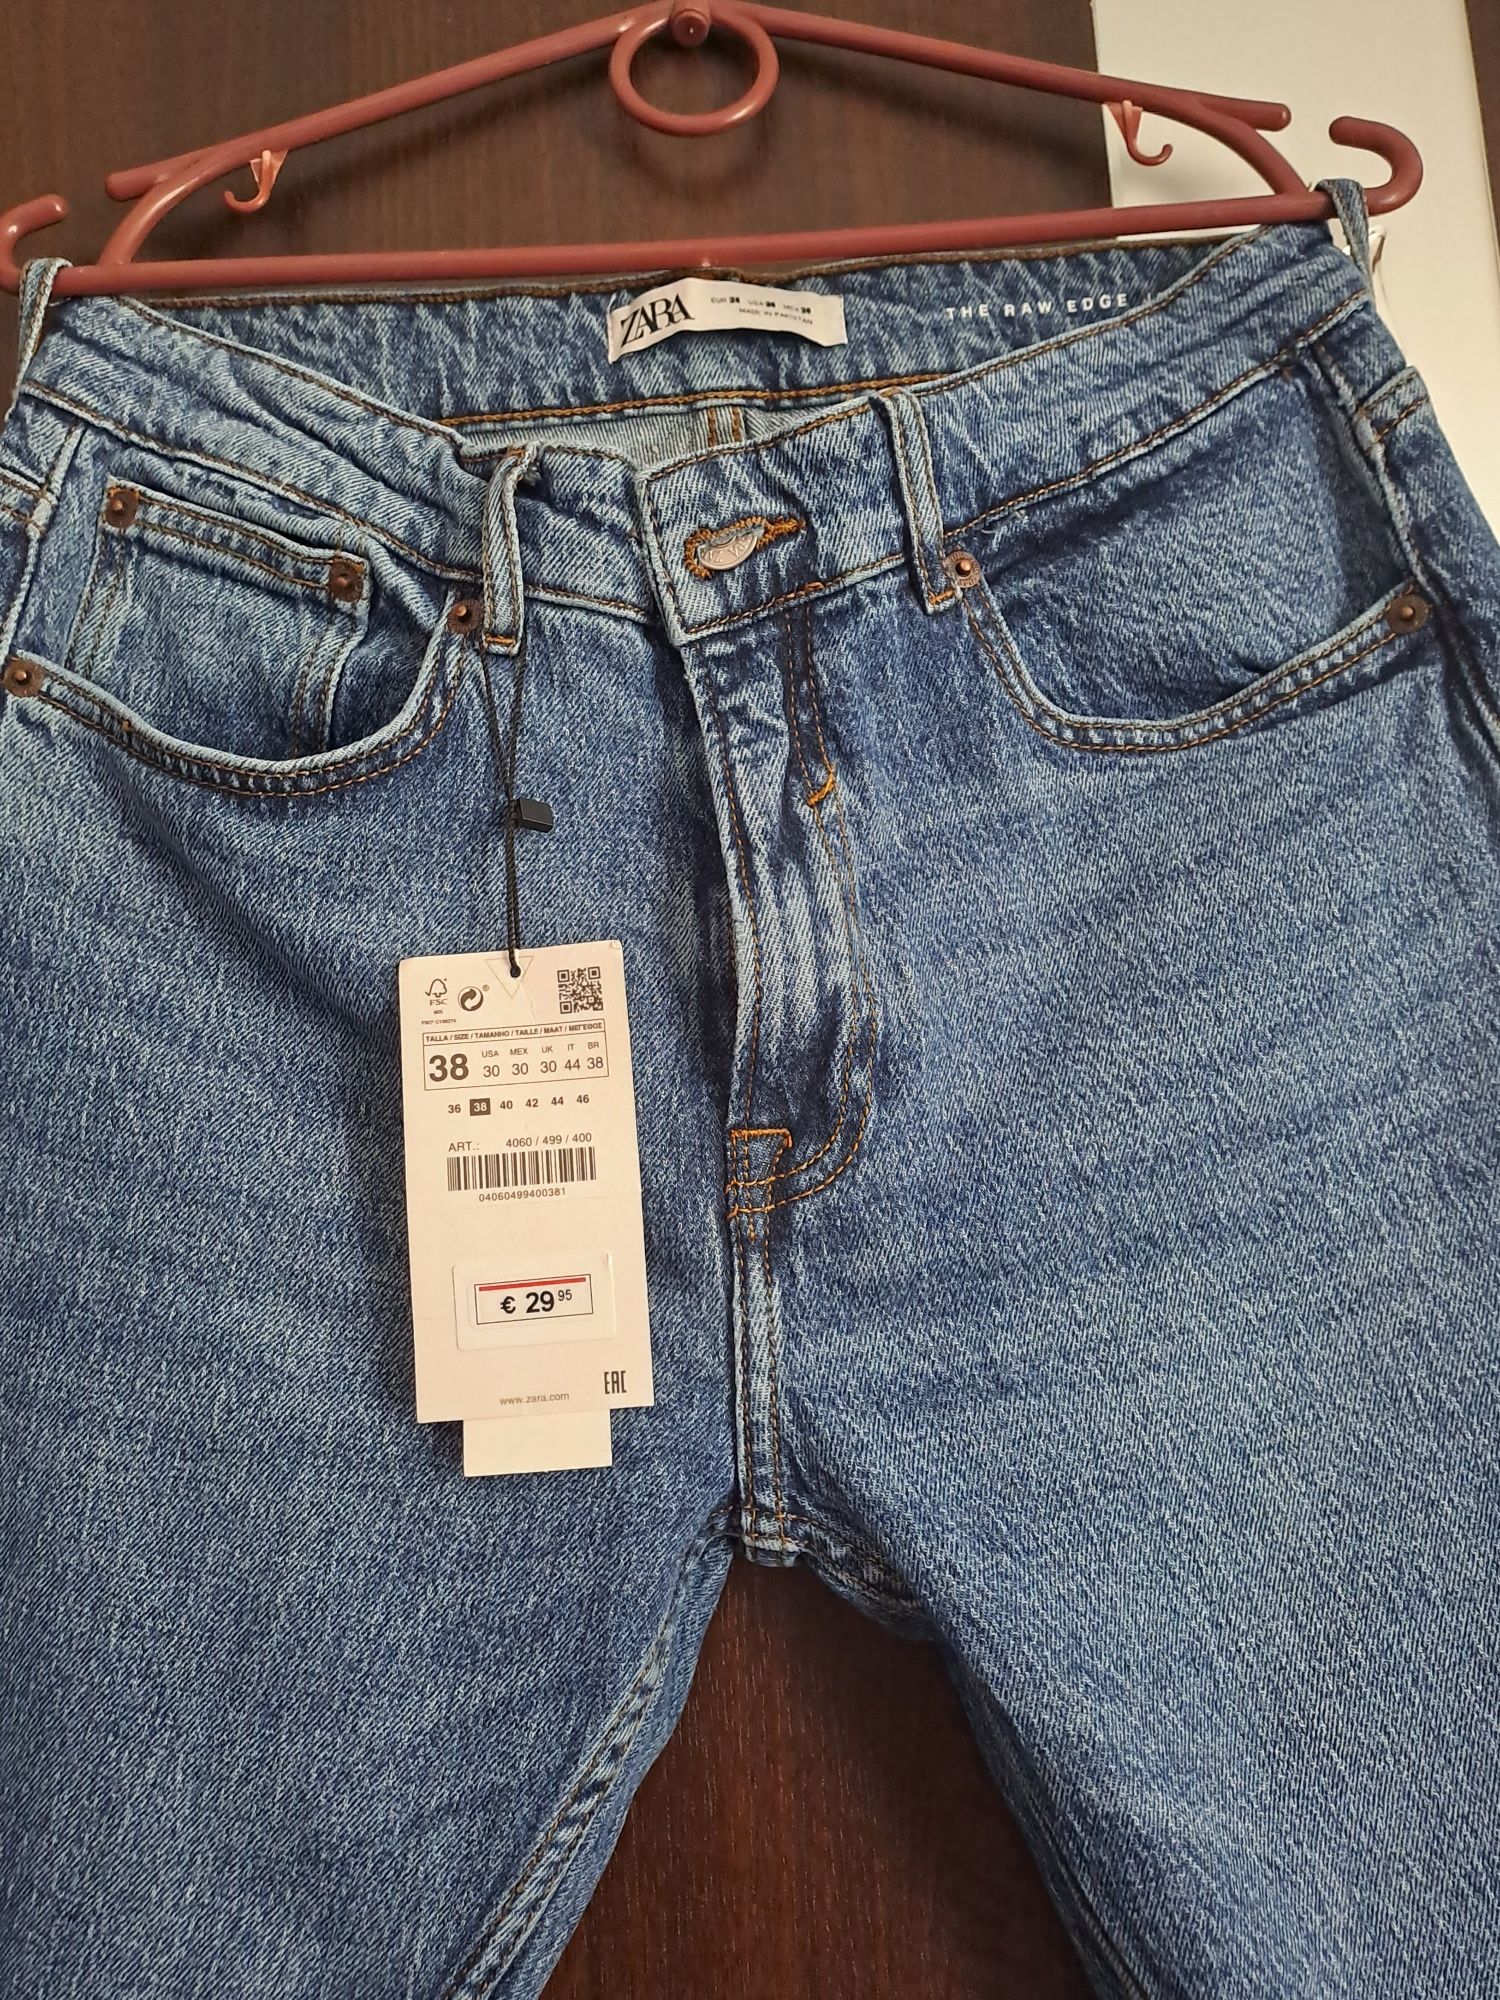 Zara мужские джинсы